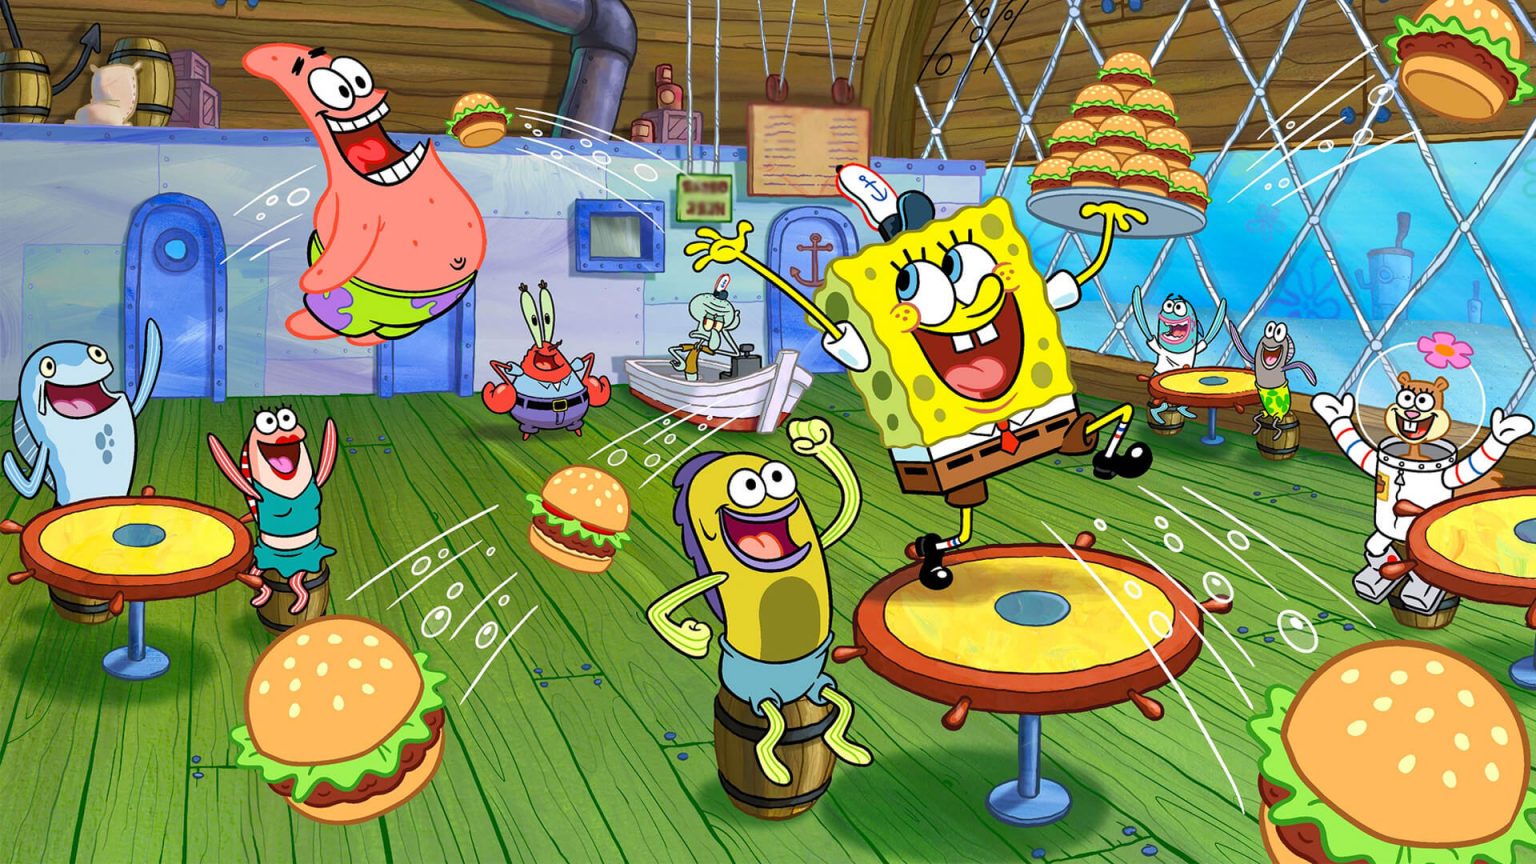 spongebob: krusty cook-off